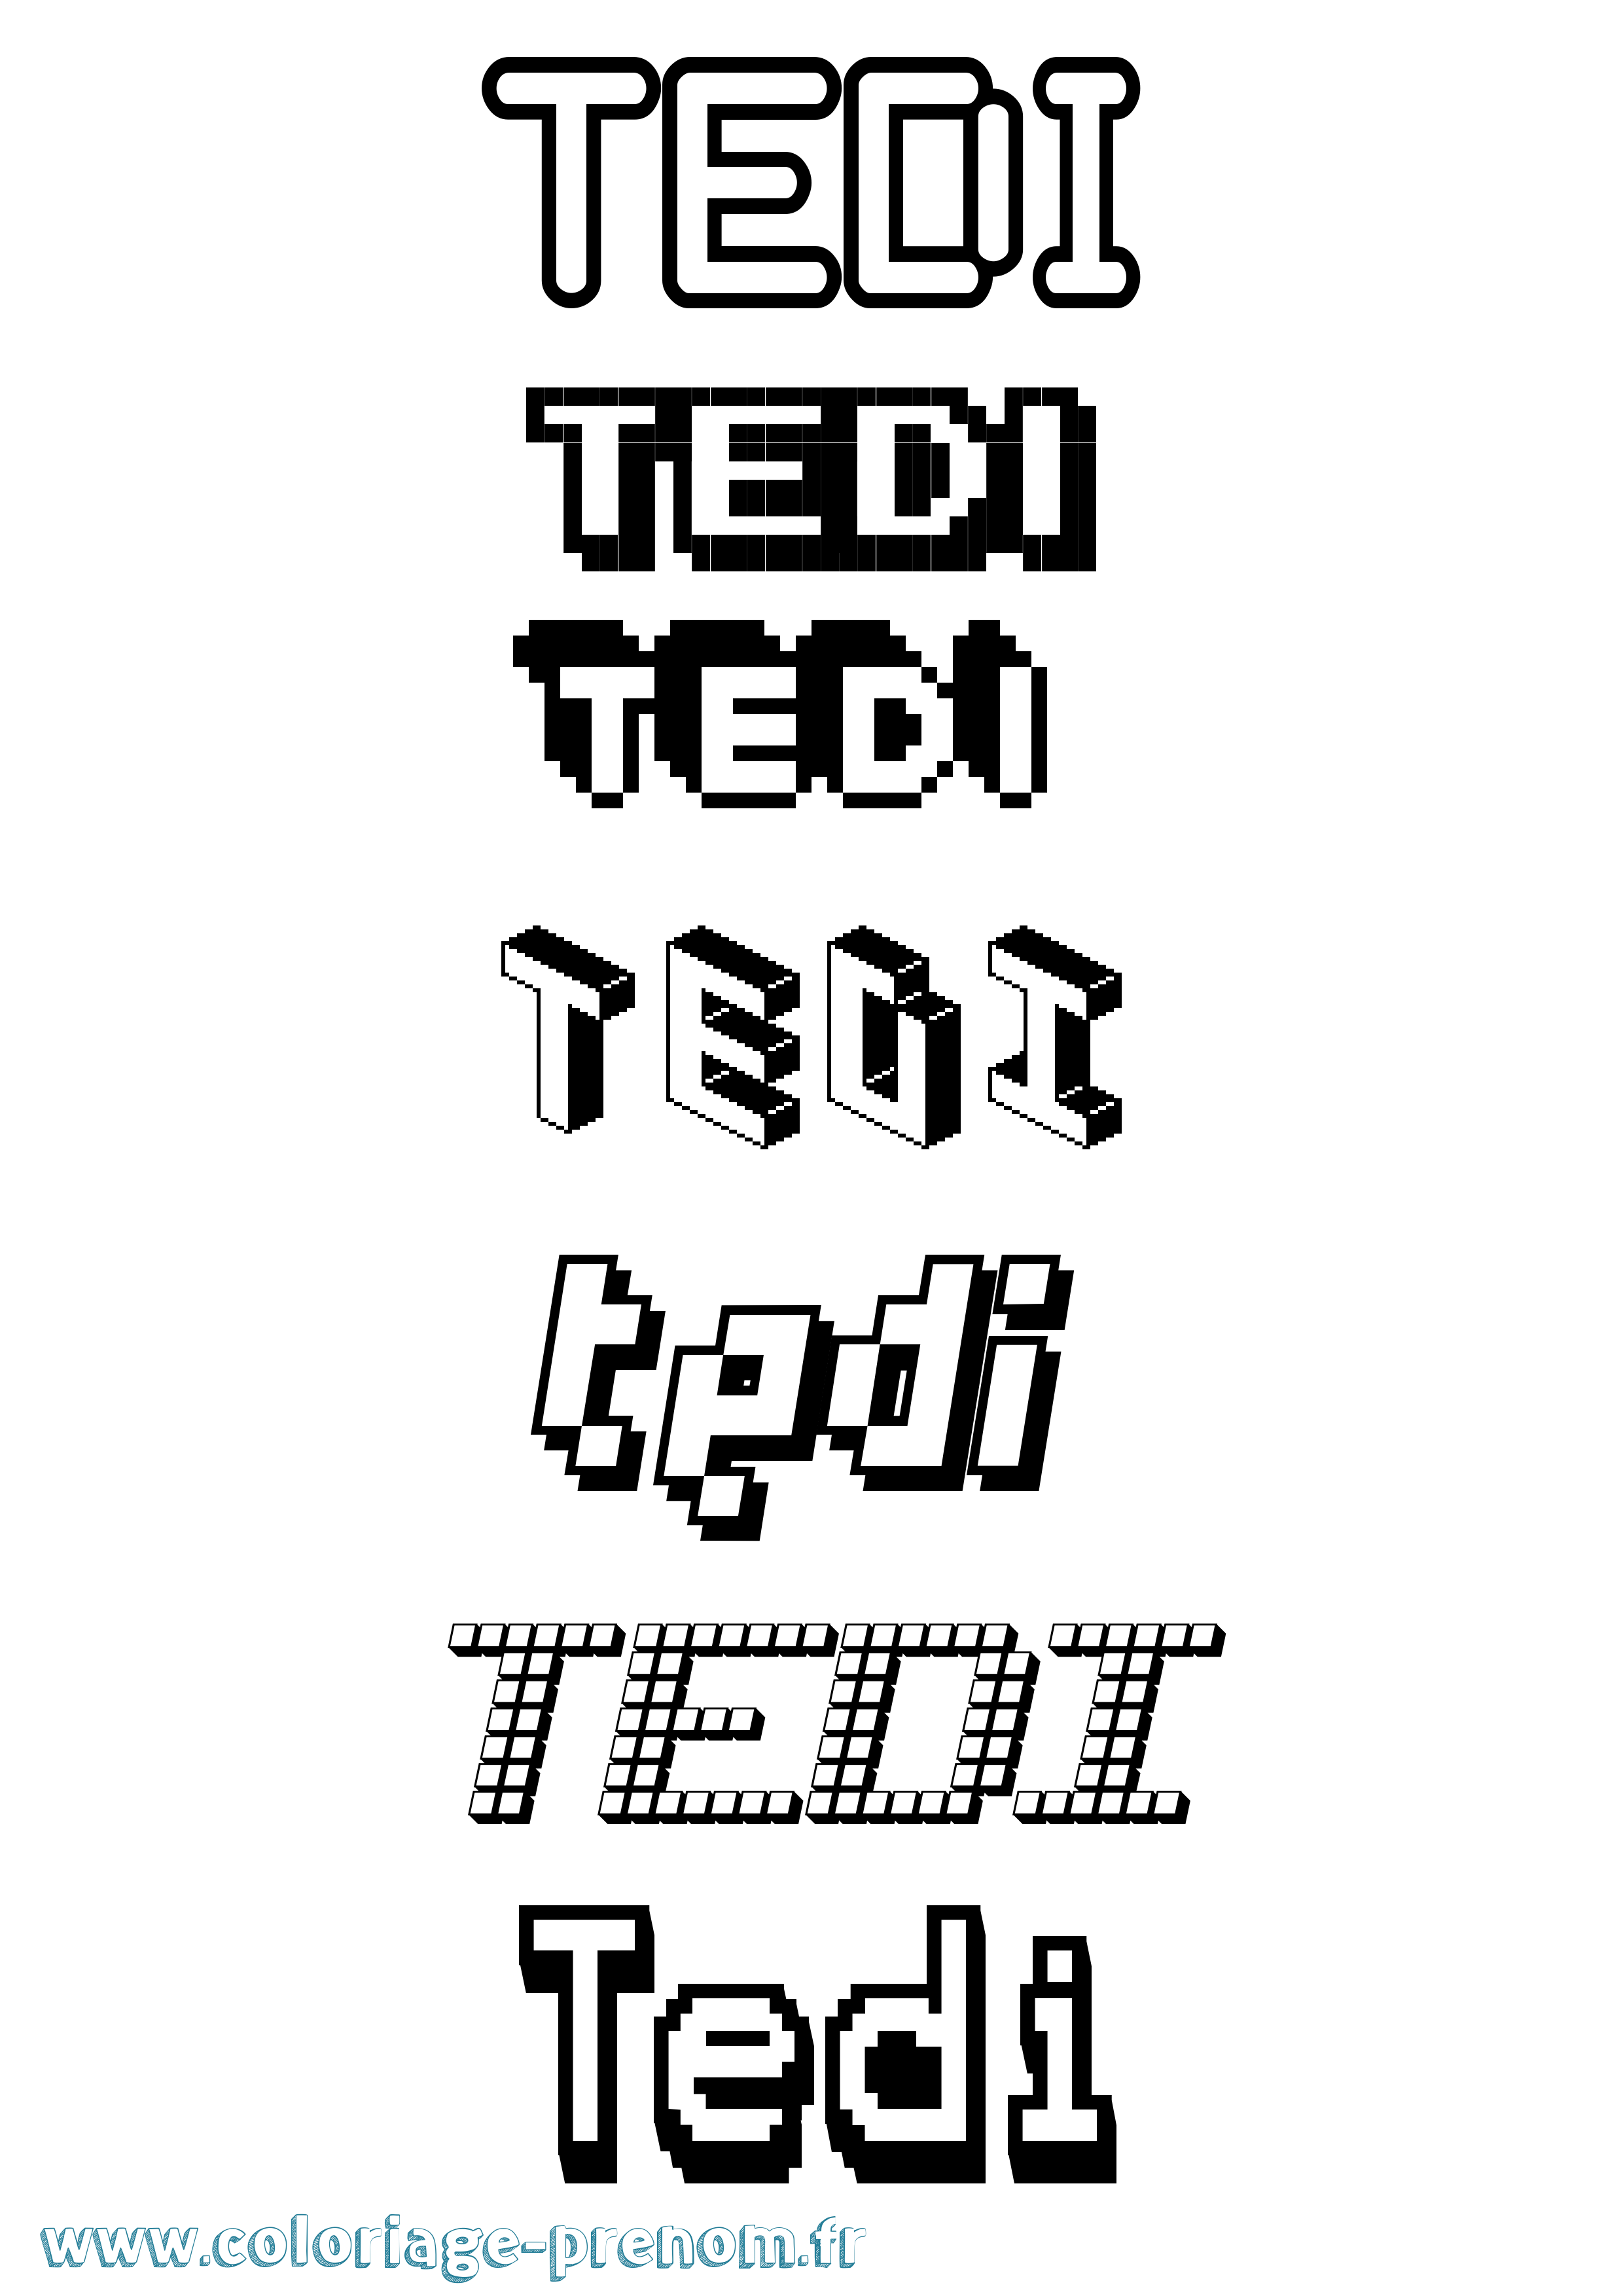 Coloriage prénom Tedi Pixel